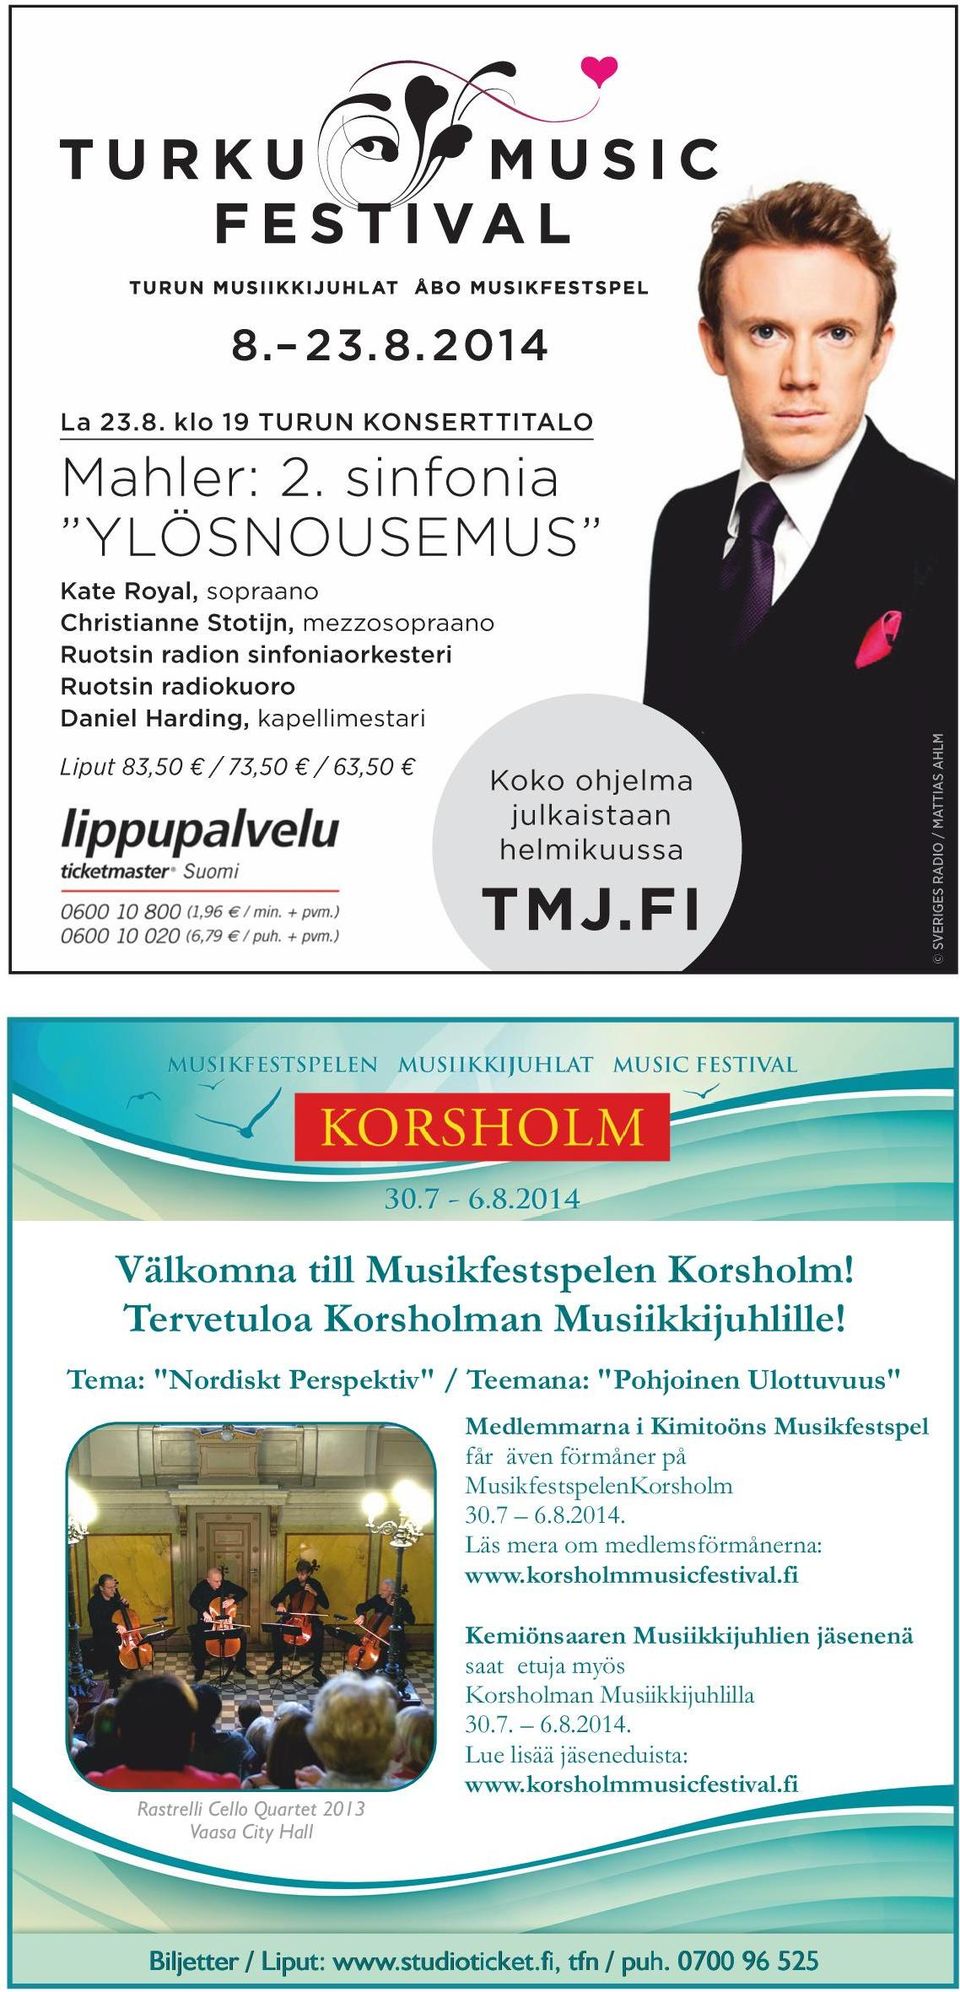 MusikfestspelenKorsholm 30.7 6.8.2014. Läs mera om medlemsförmånerna: www.korsholmmusicfestival.